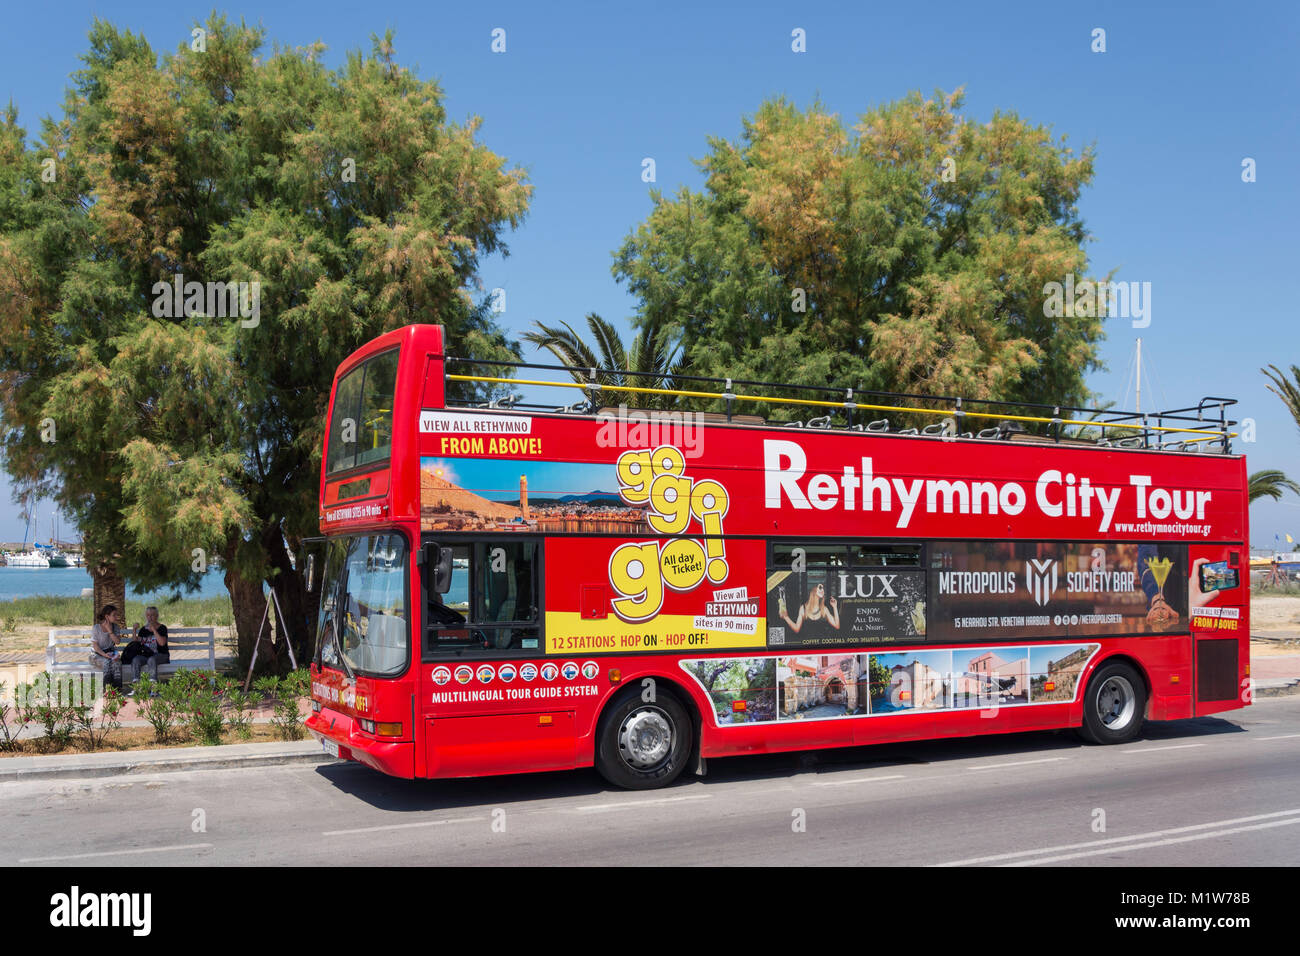 Oben offene Stadt Rethymno Tour bus, Sofokli Venizelou, Rethymnon (Rethymno), Rethymno, Kreta (Kriti), Griechenland Stockfoto